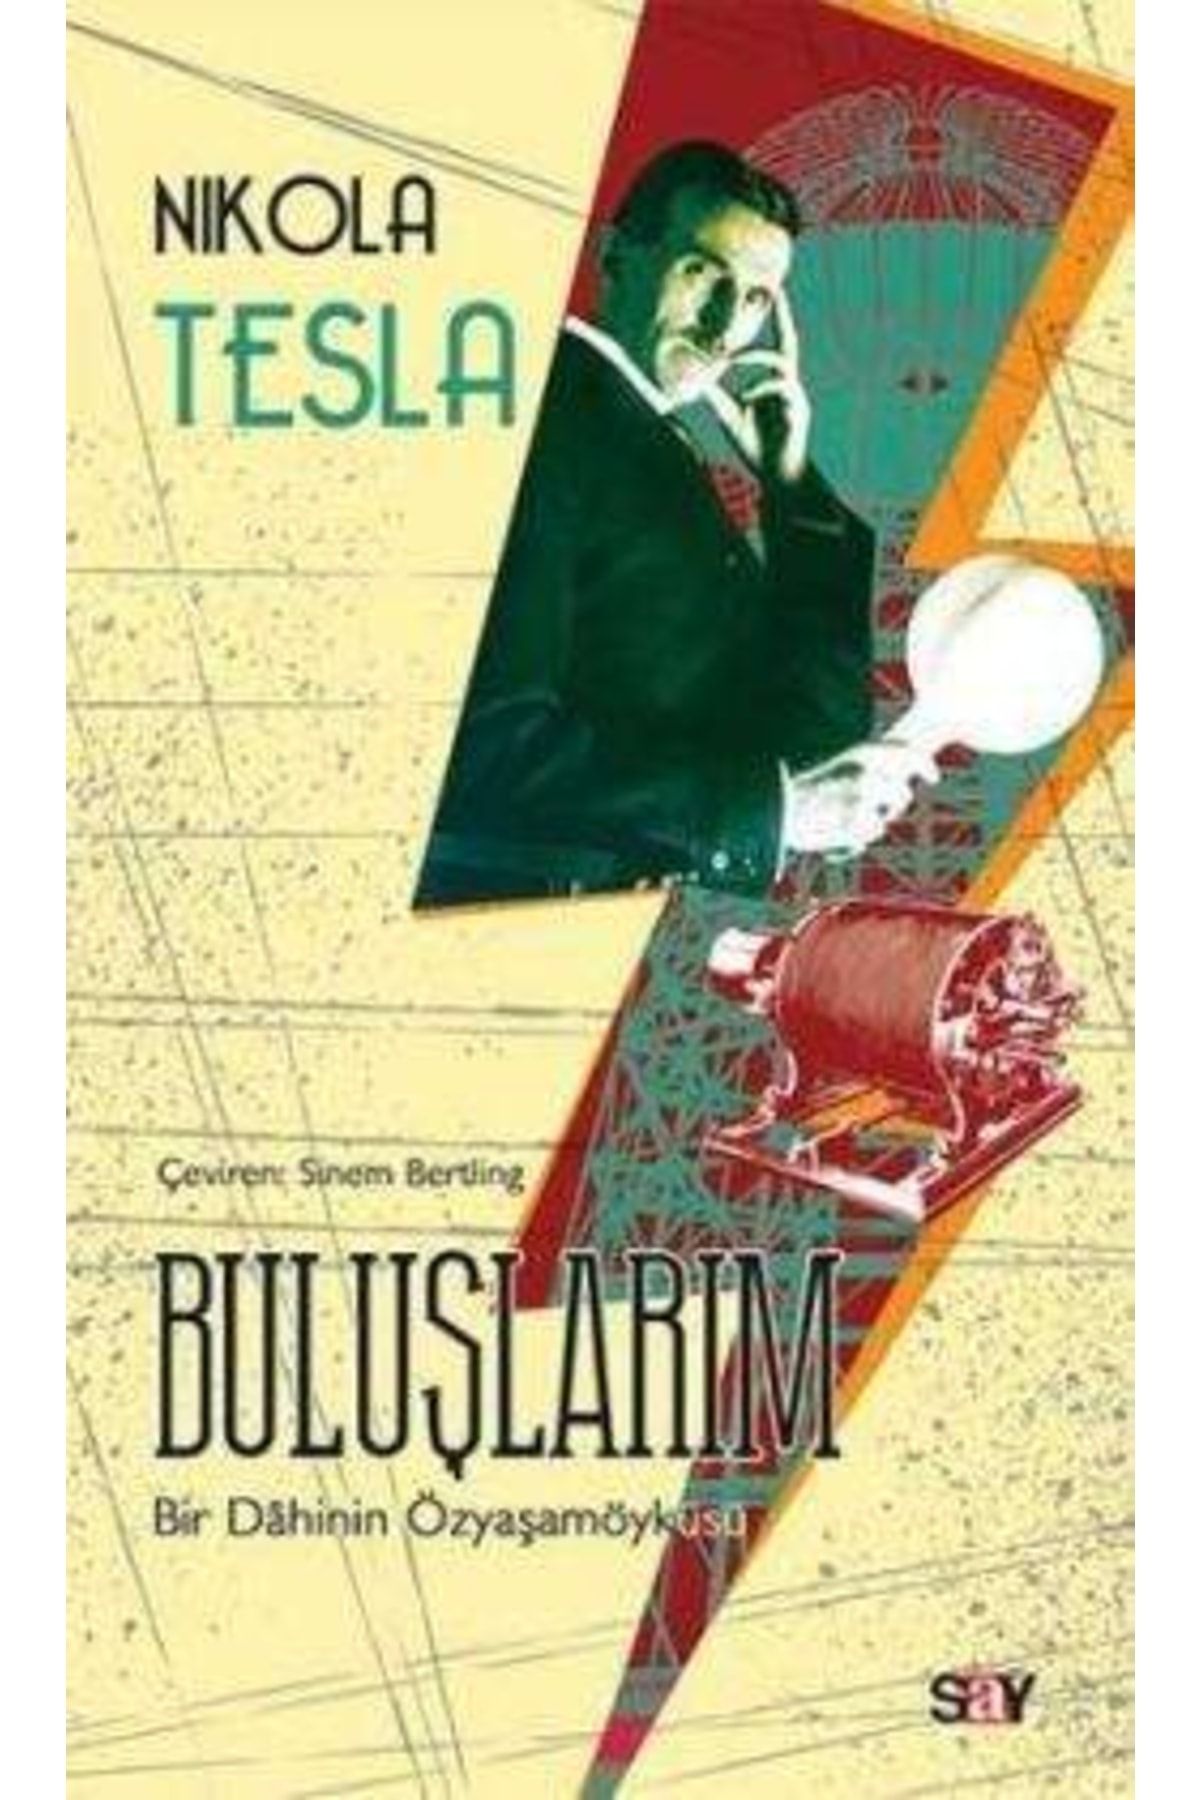 say Buluşlarım - Nikola Tesla